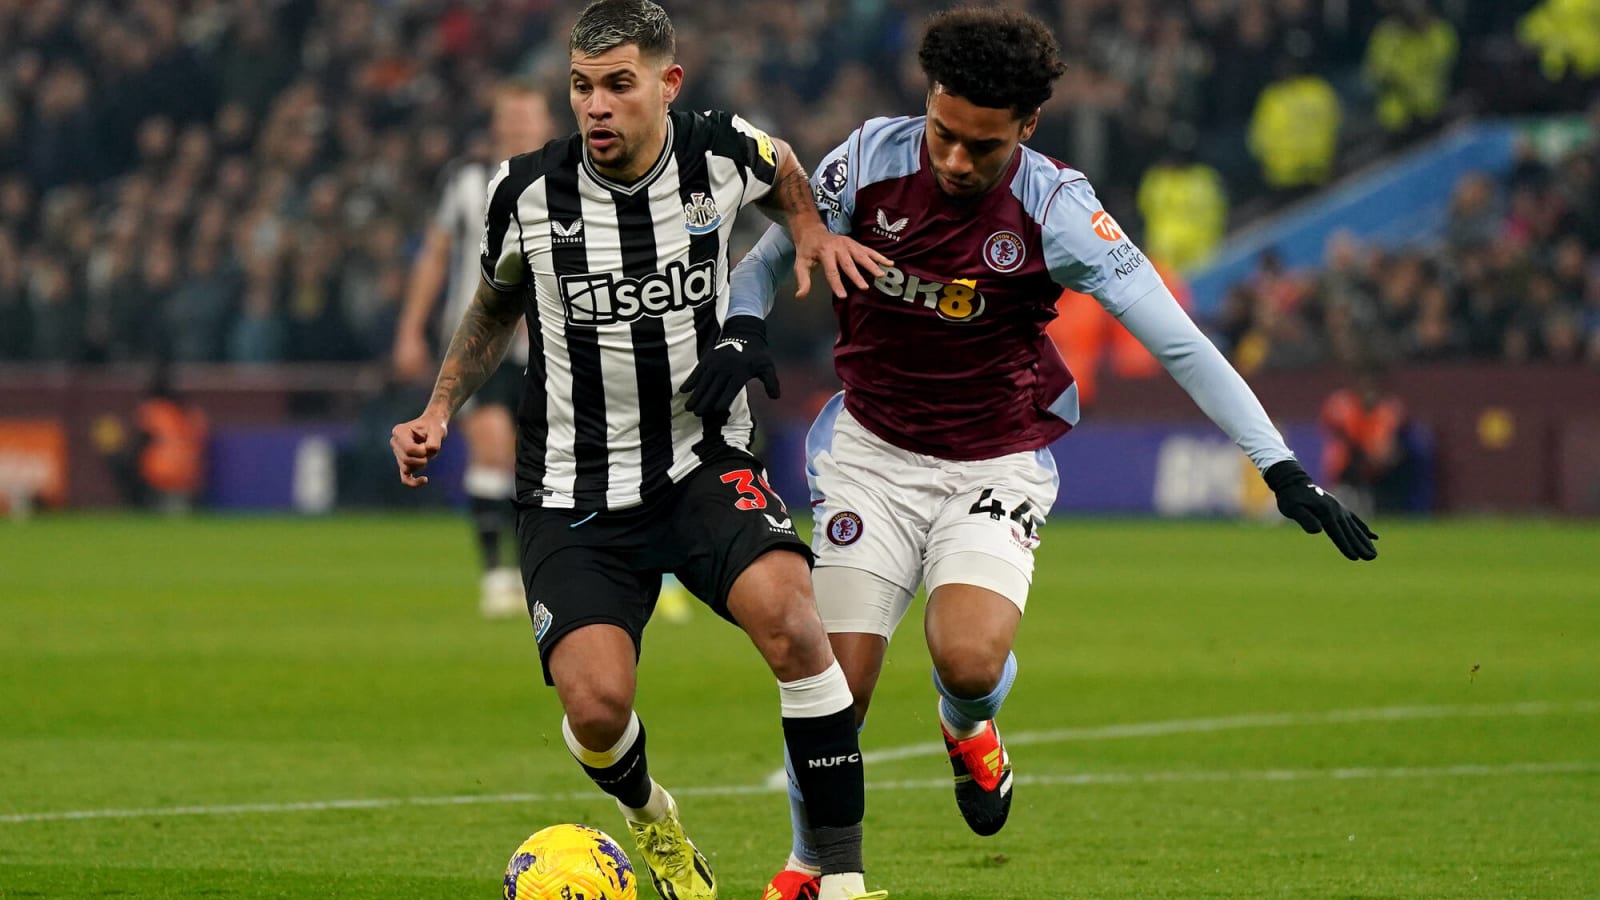 Aston Villa midfielder likely to miss European Championship